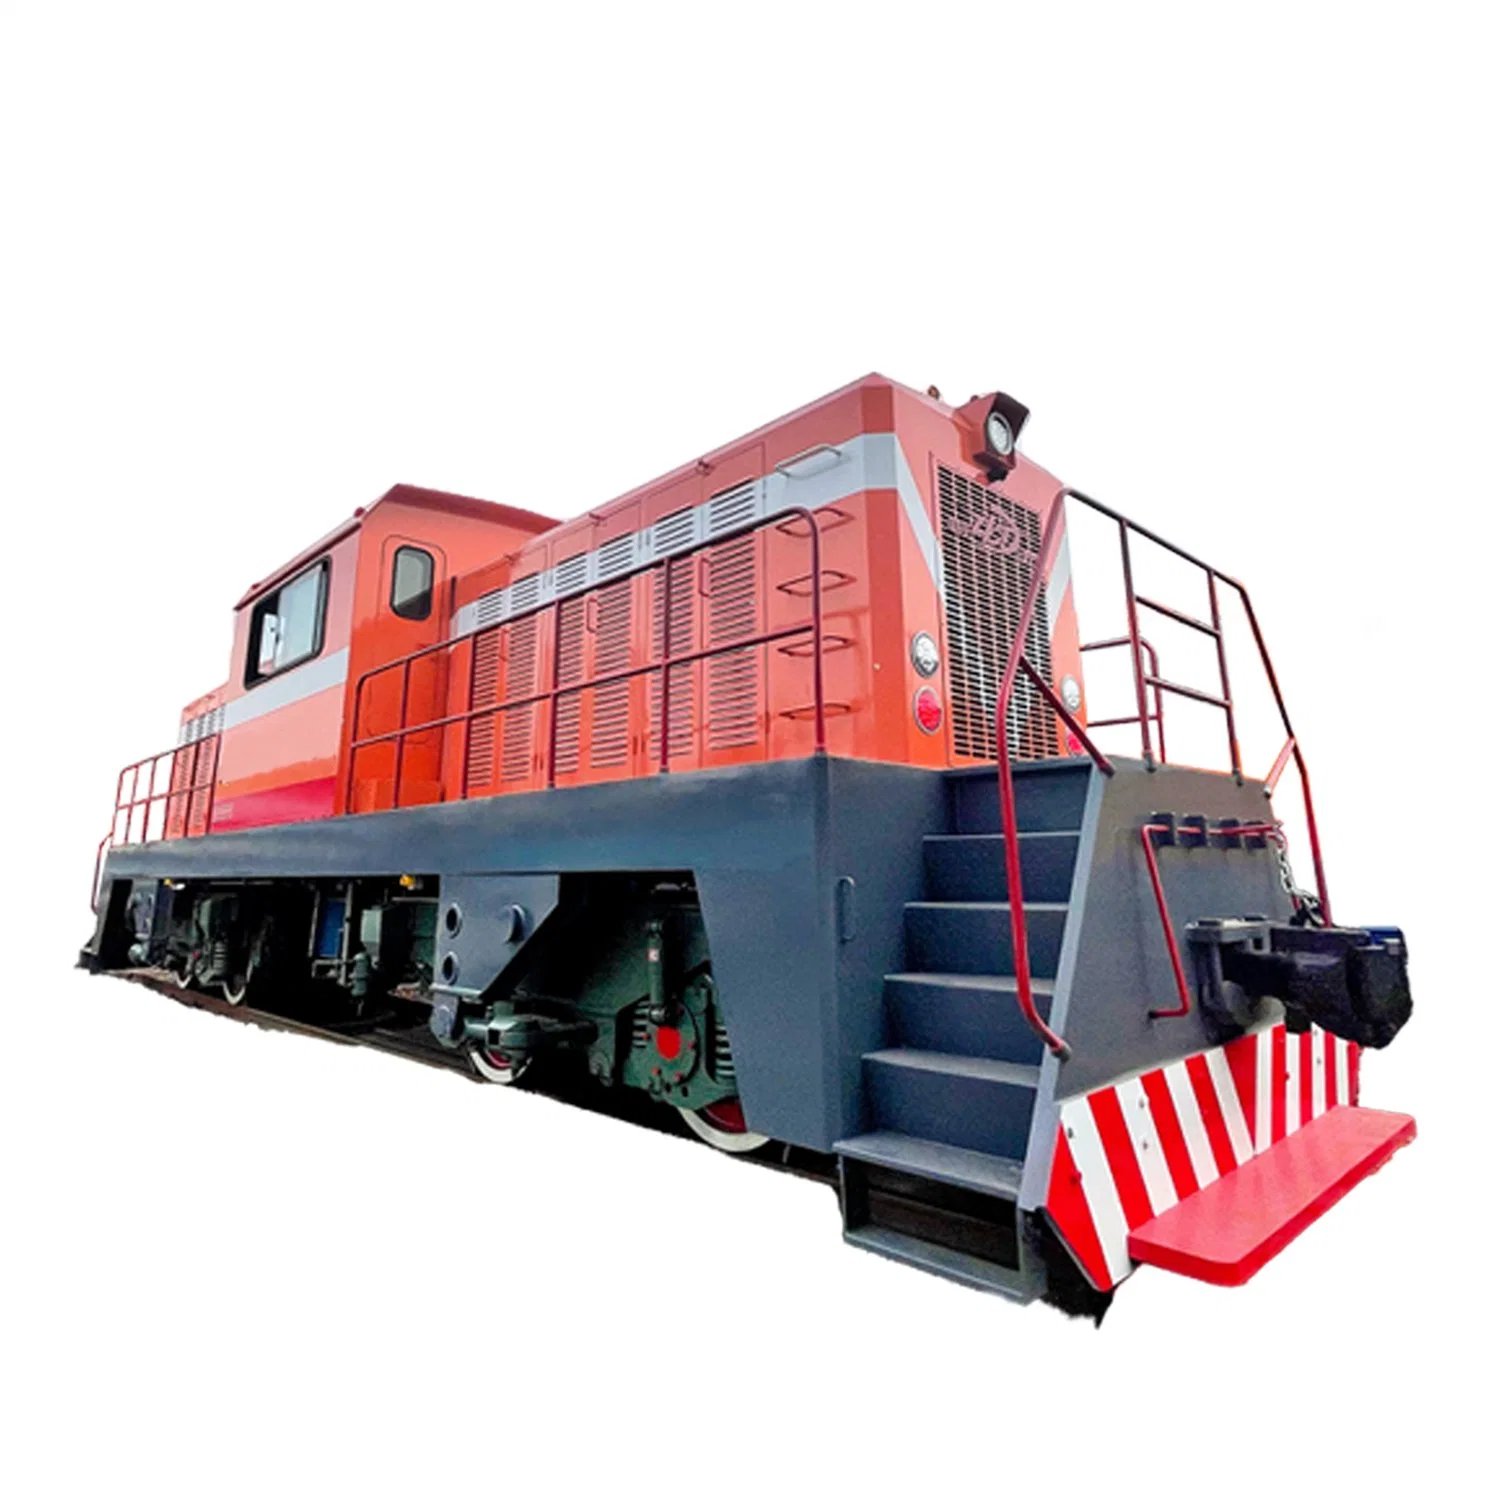 420HP Power дизельный маневровых локомотива используется для 1706 тонн Max. Загрузка системы регулирования тягового усилия